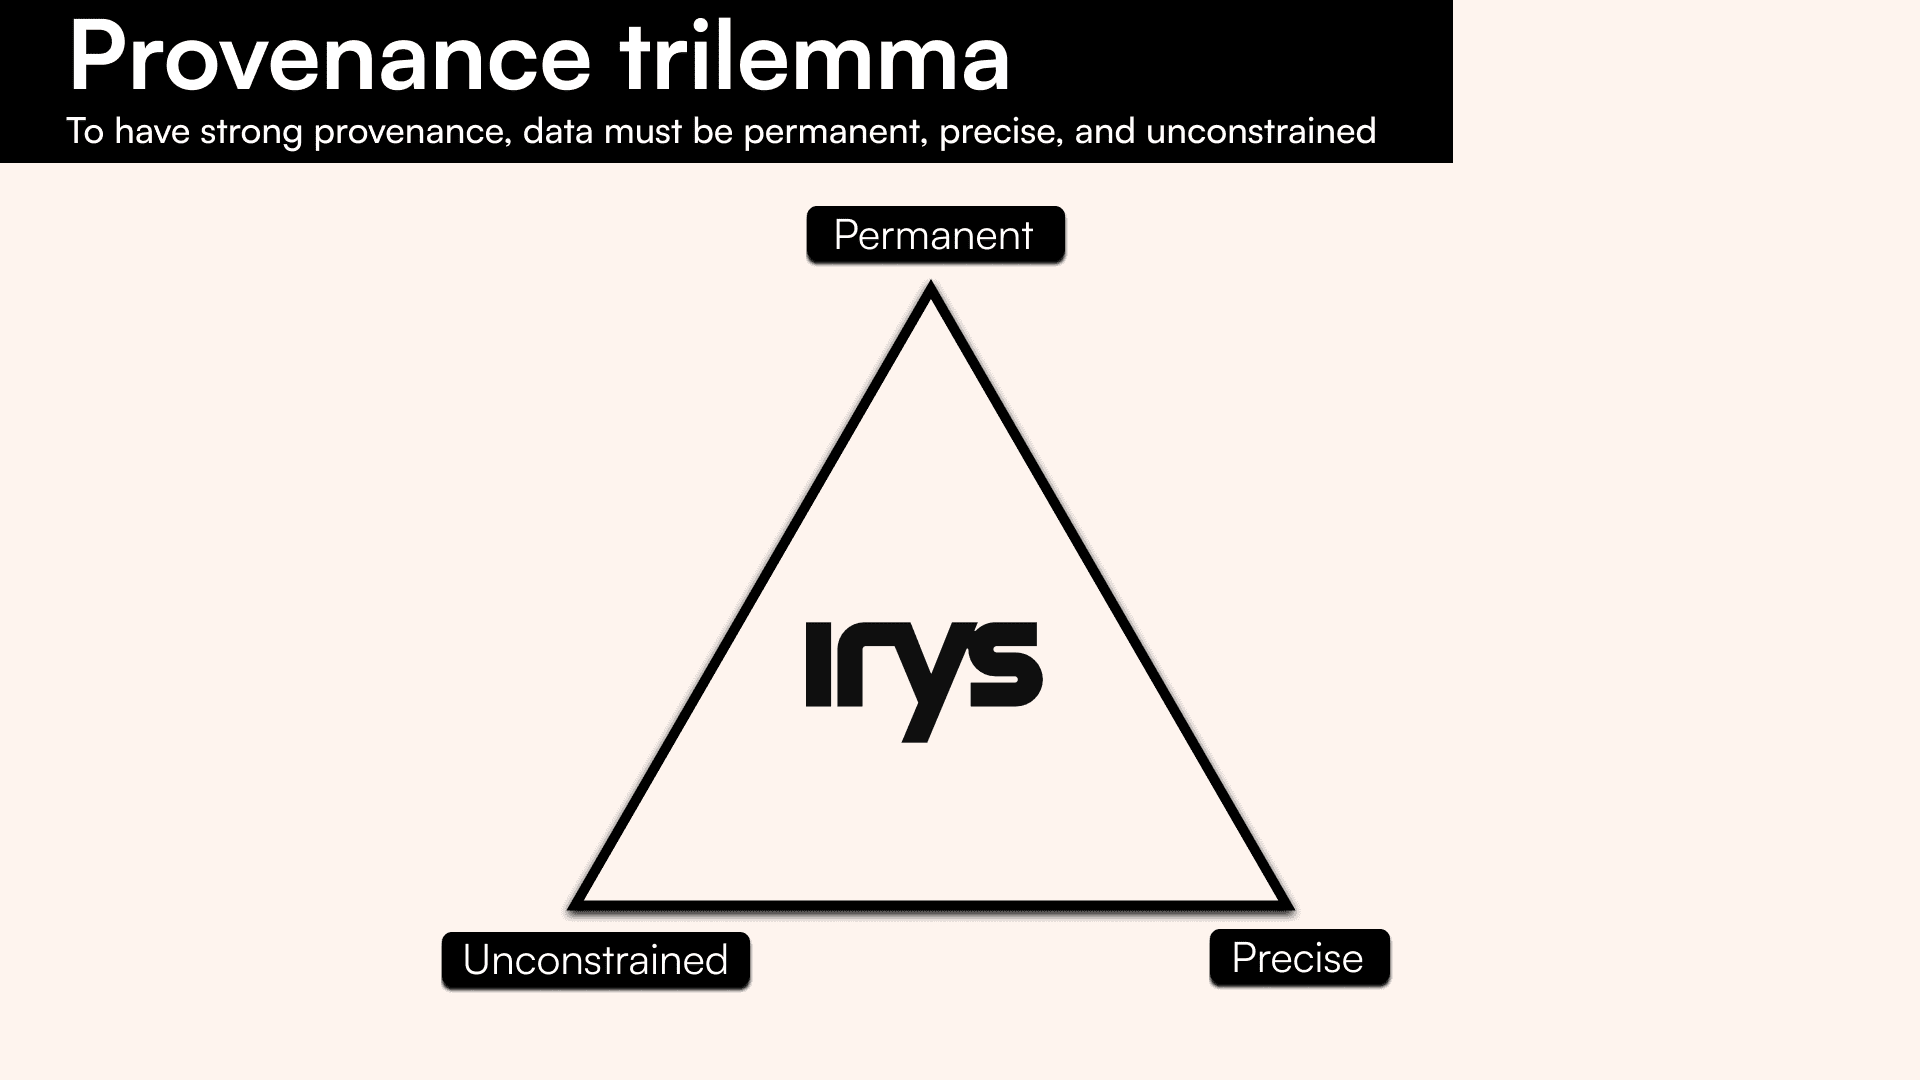 Irys solves the provenance trilemma